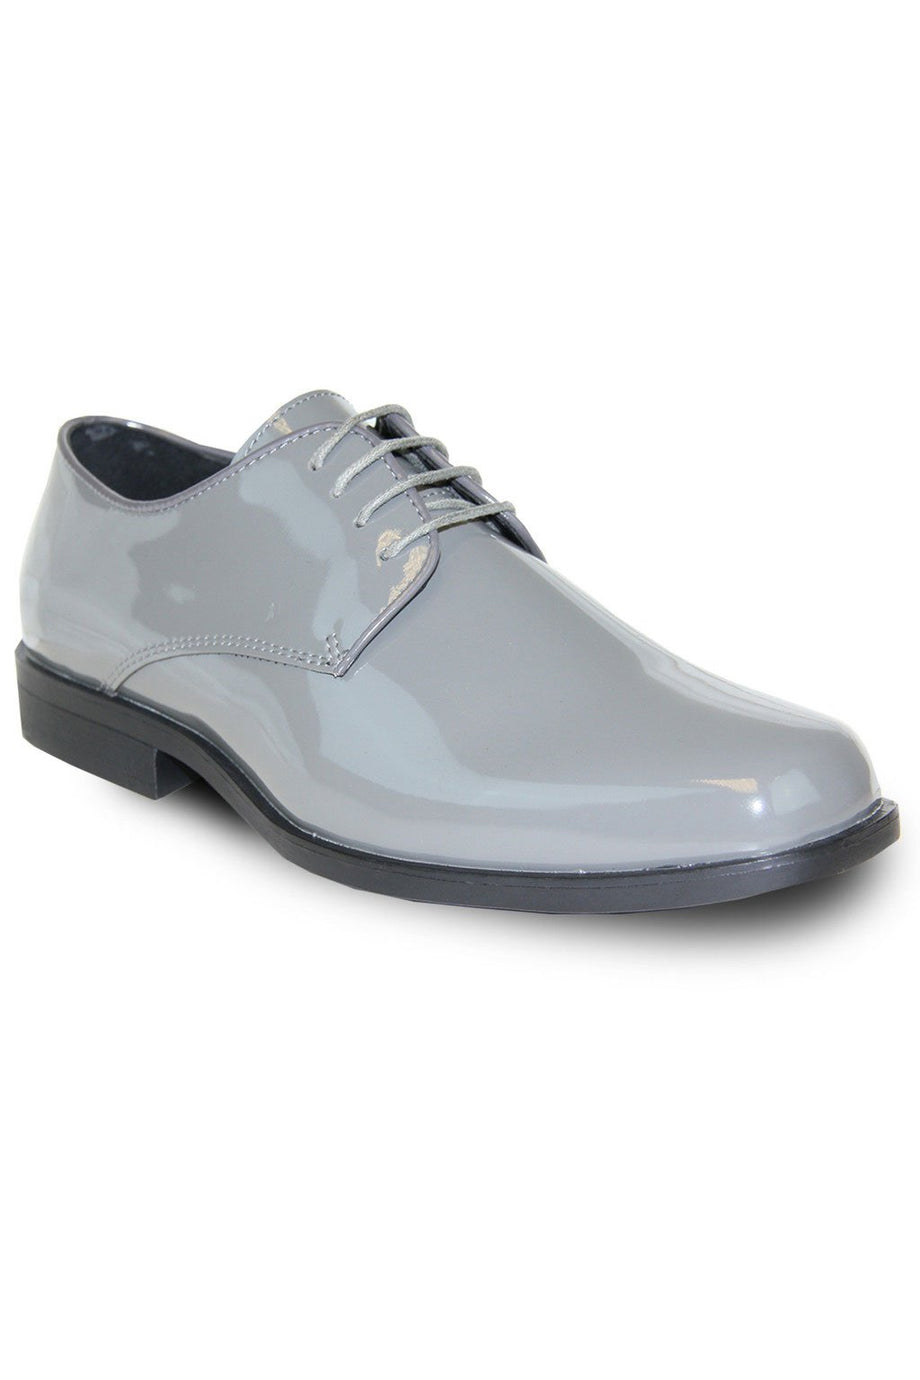 Vangelo "Sarno" Grey Vangelo Tuxedo Shoes